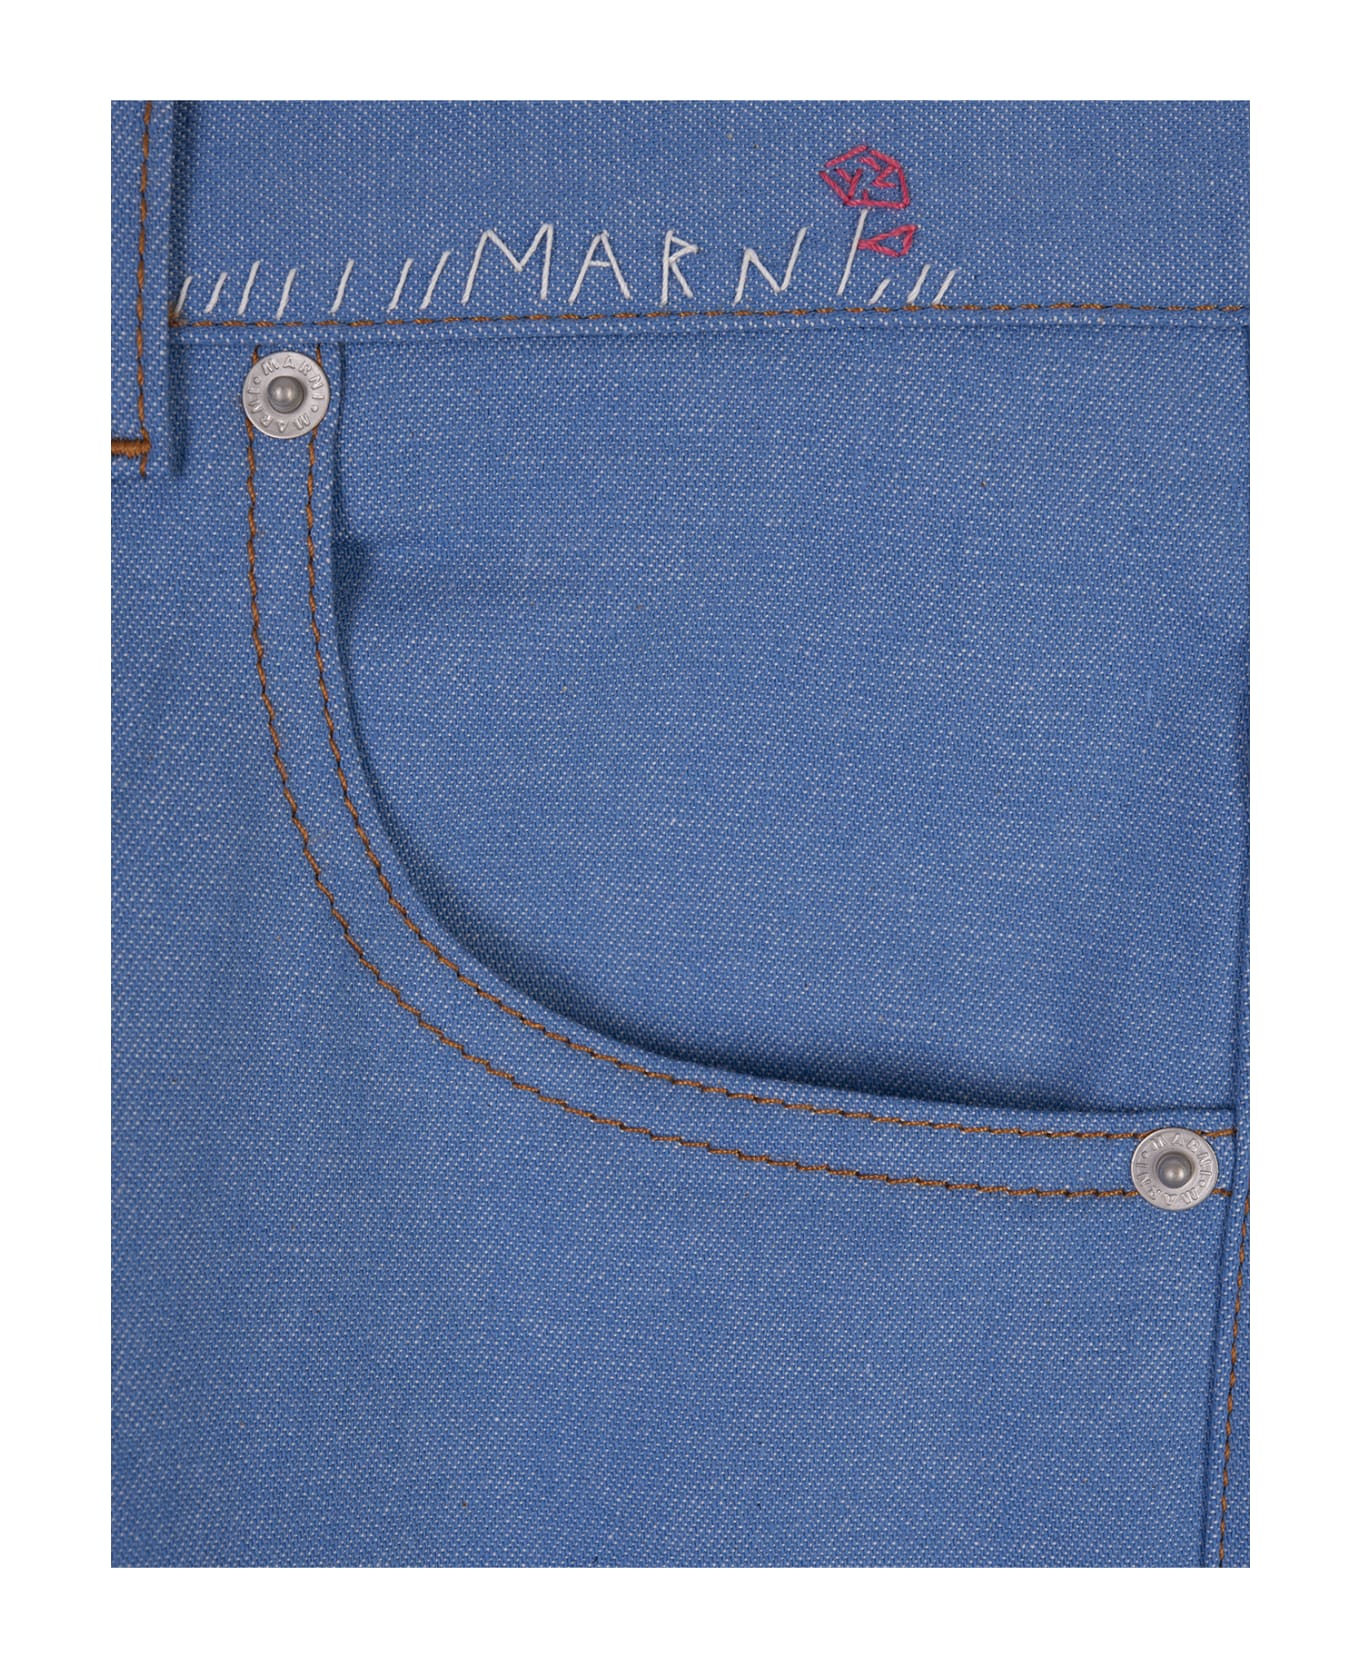 Marni Blue Denim Stretch Flared Trousers - Blue